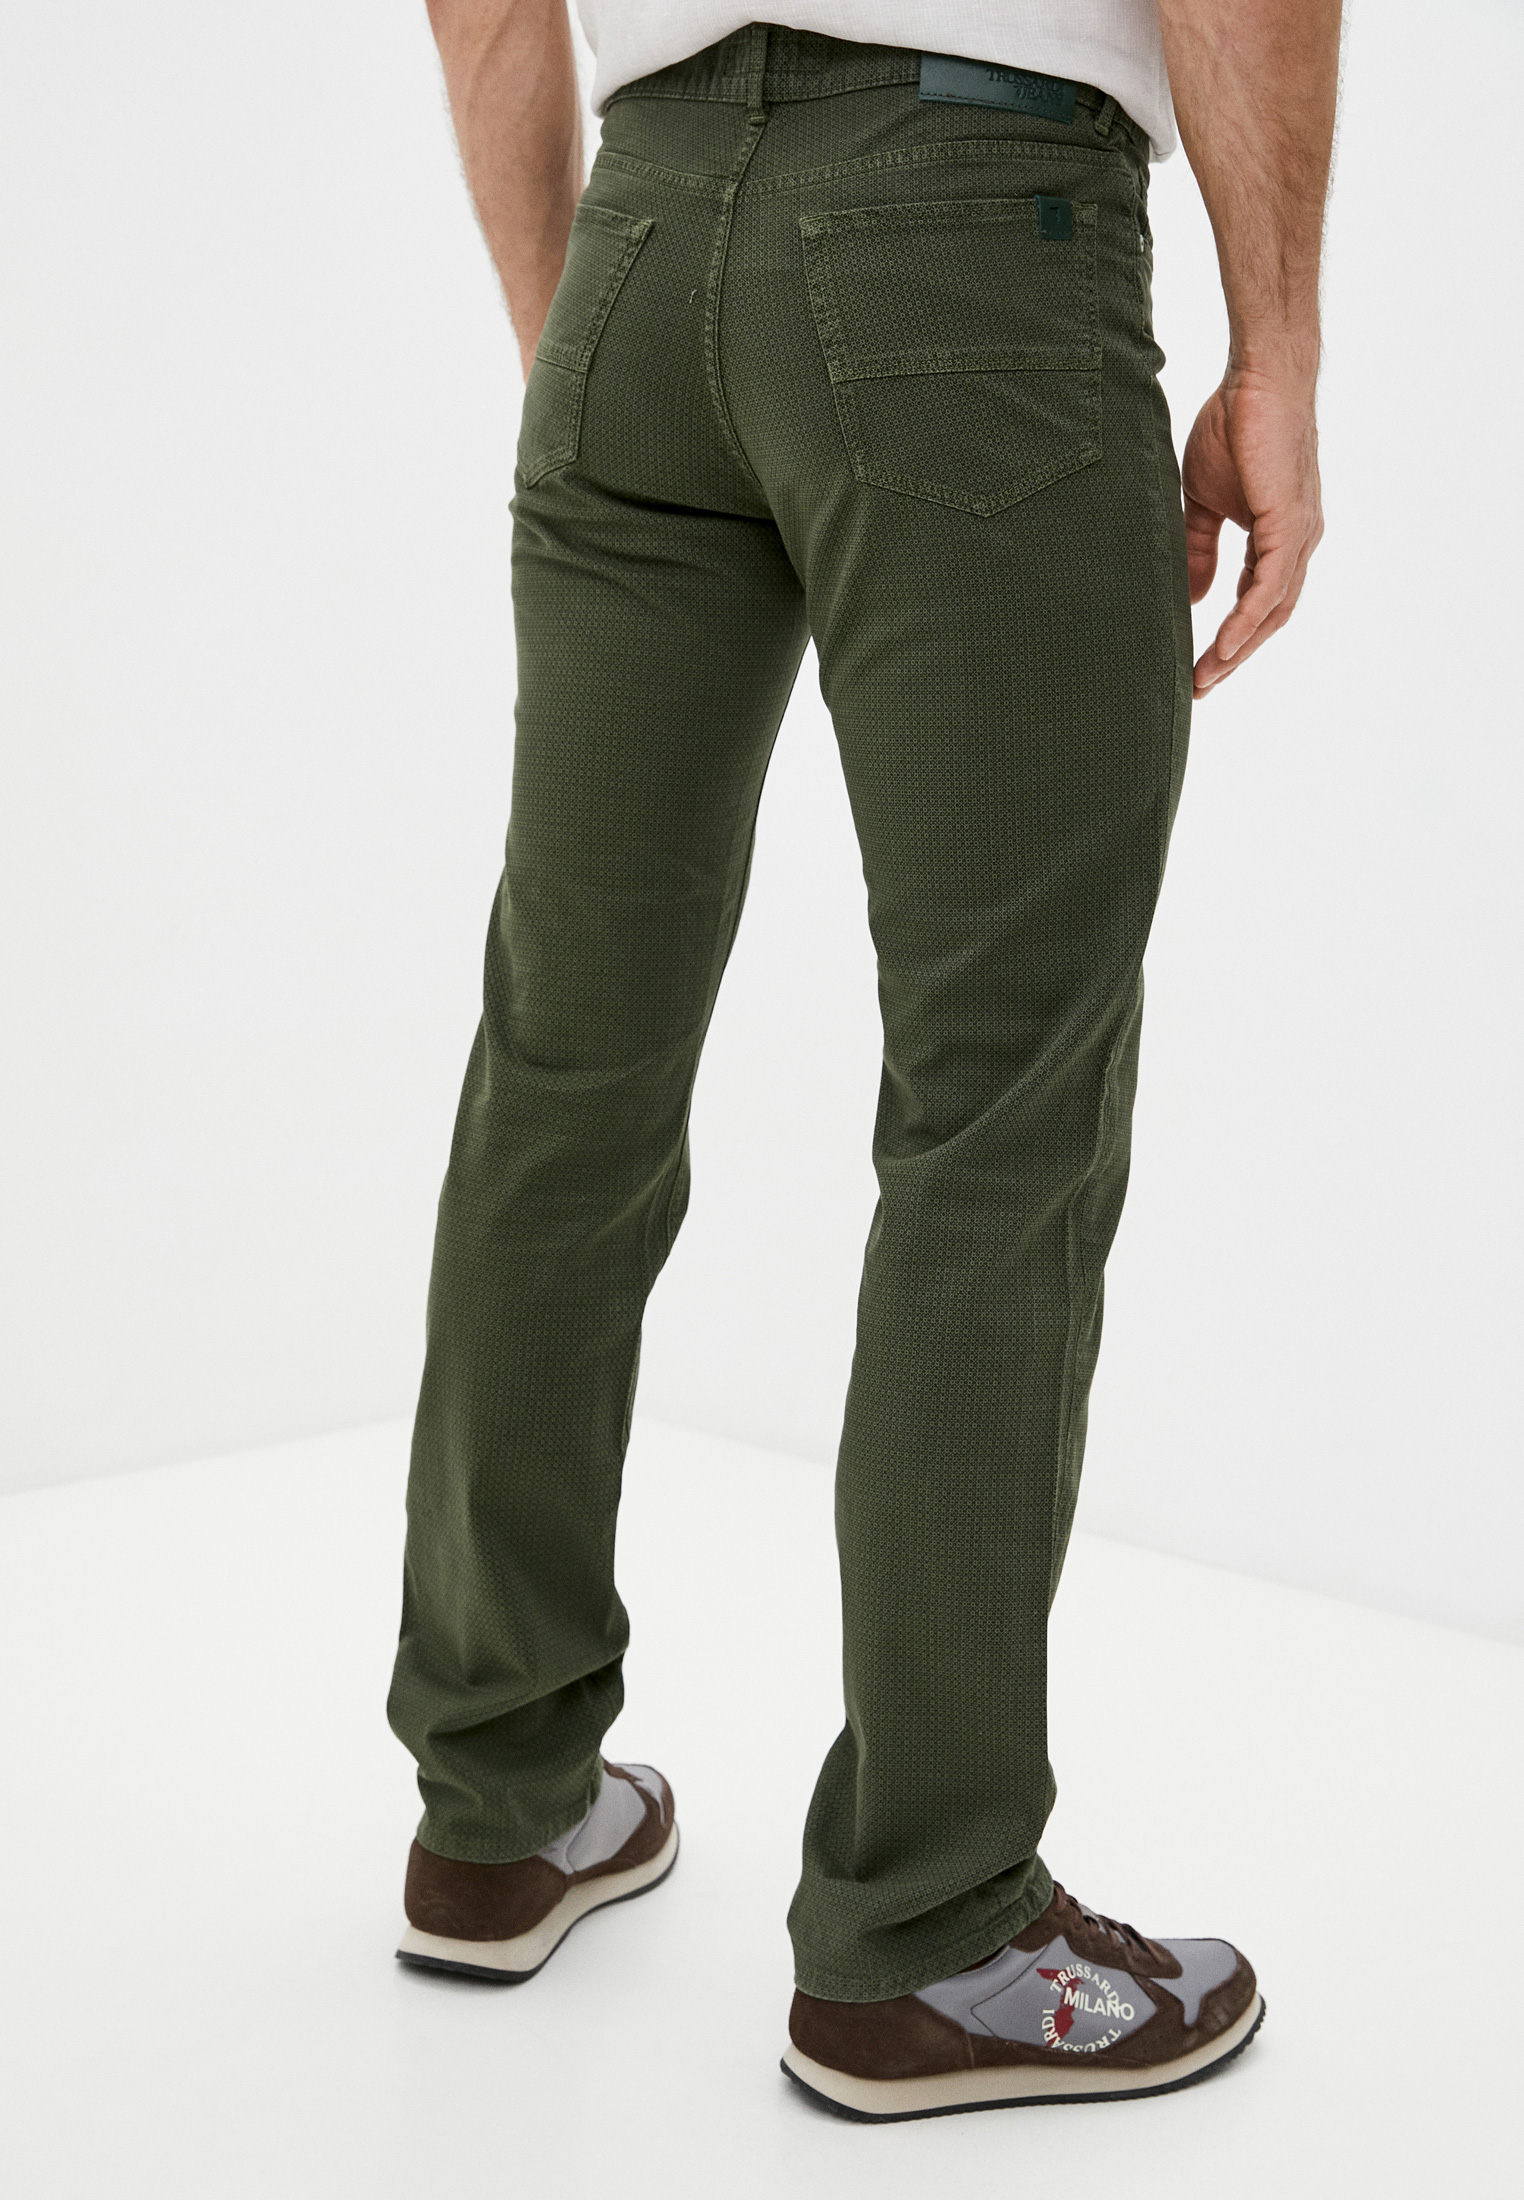 Мужские повседневные брюки Trussardi (Труссарди) 52J00004-1T001481-H-001: изображение 4